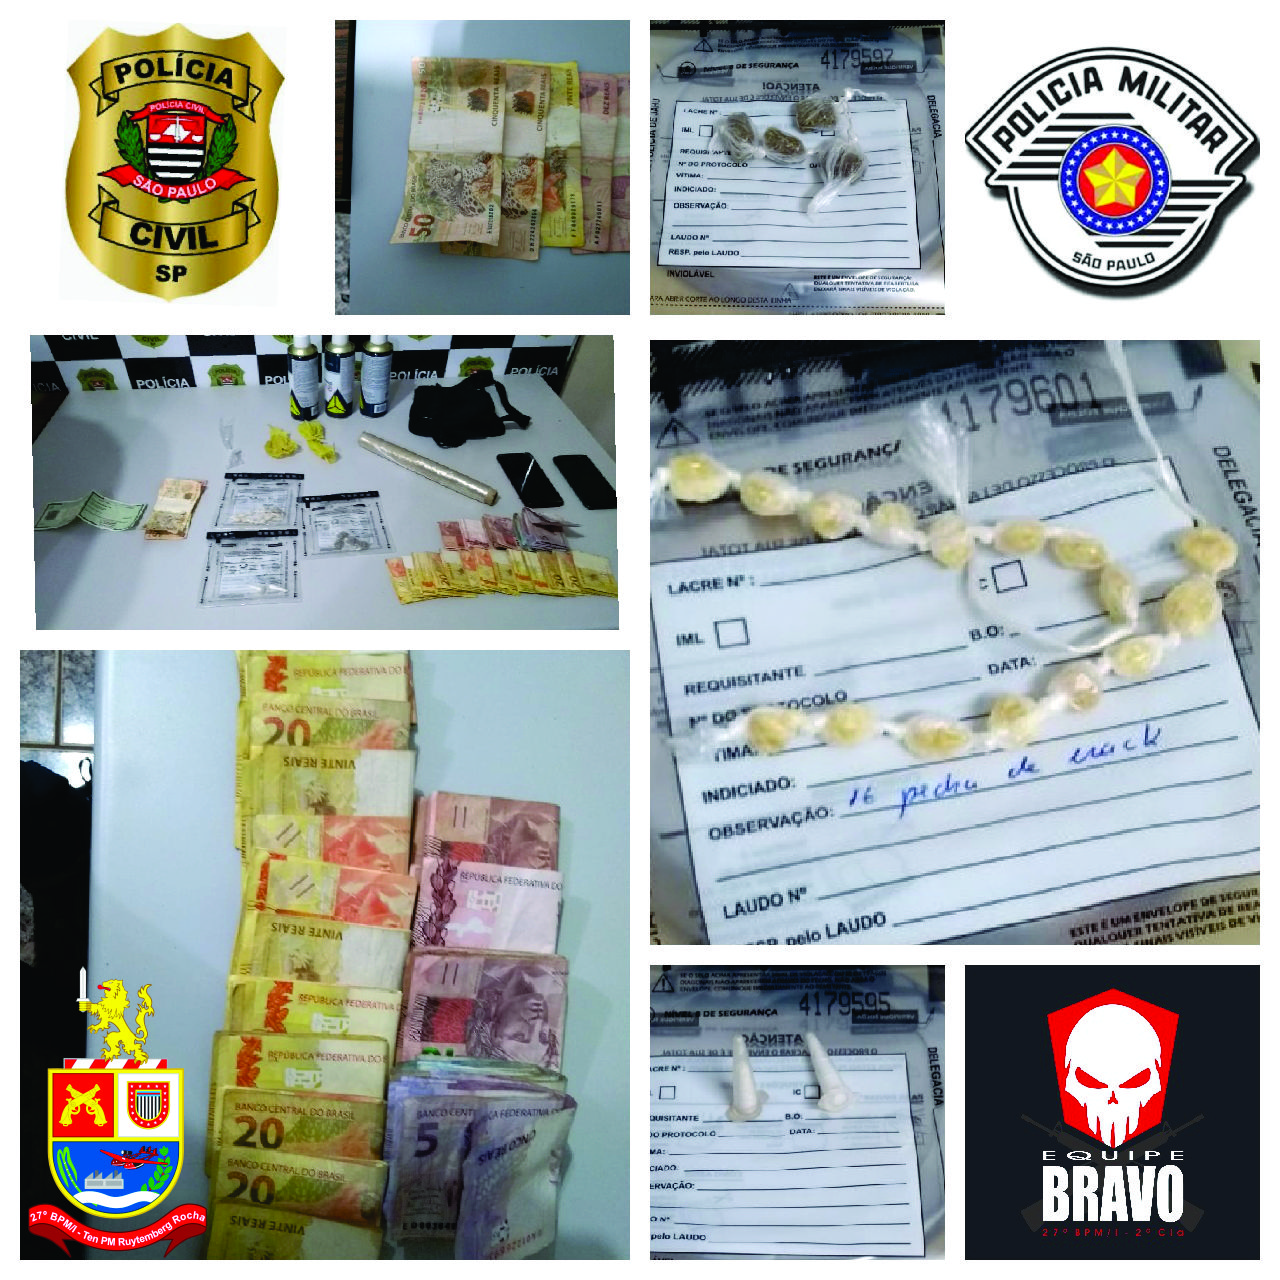 Operação Conjunta entre Polícia Militar e Polícia Civil, prende dois por tráfico e associação ao tráfico em Igaraçu do Tietê.